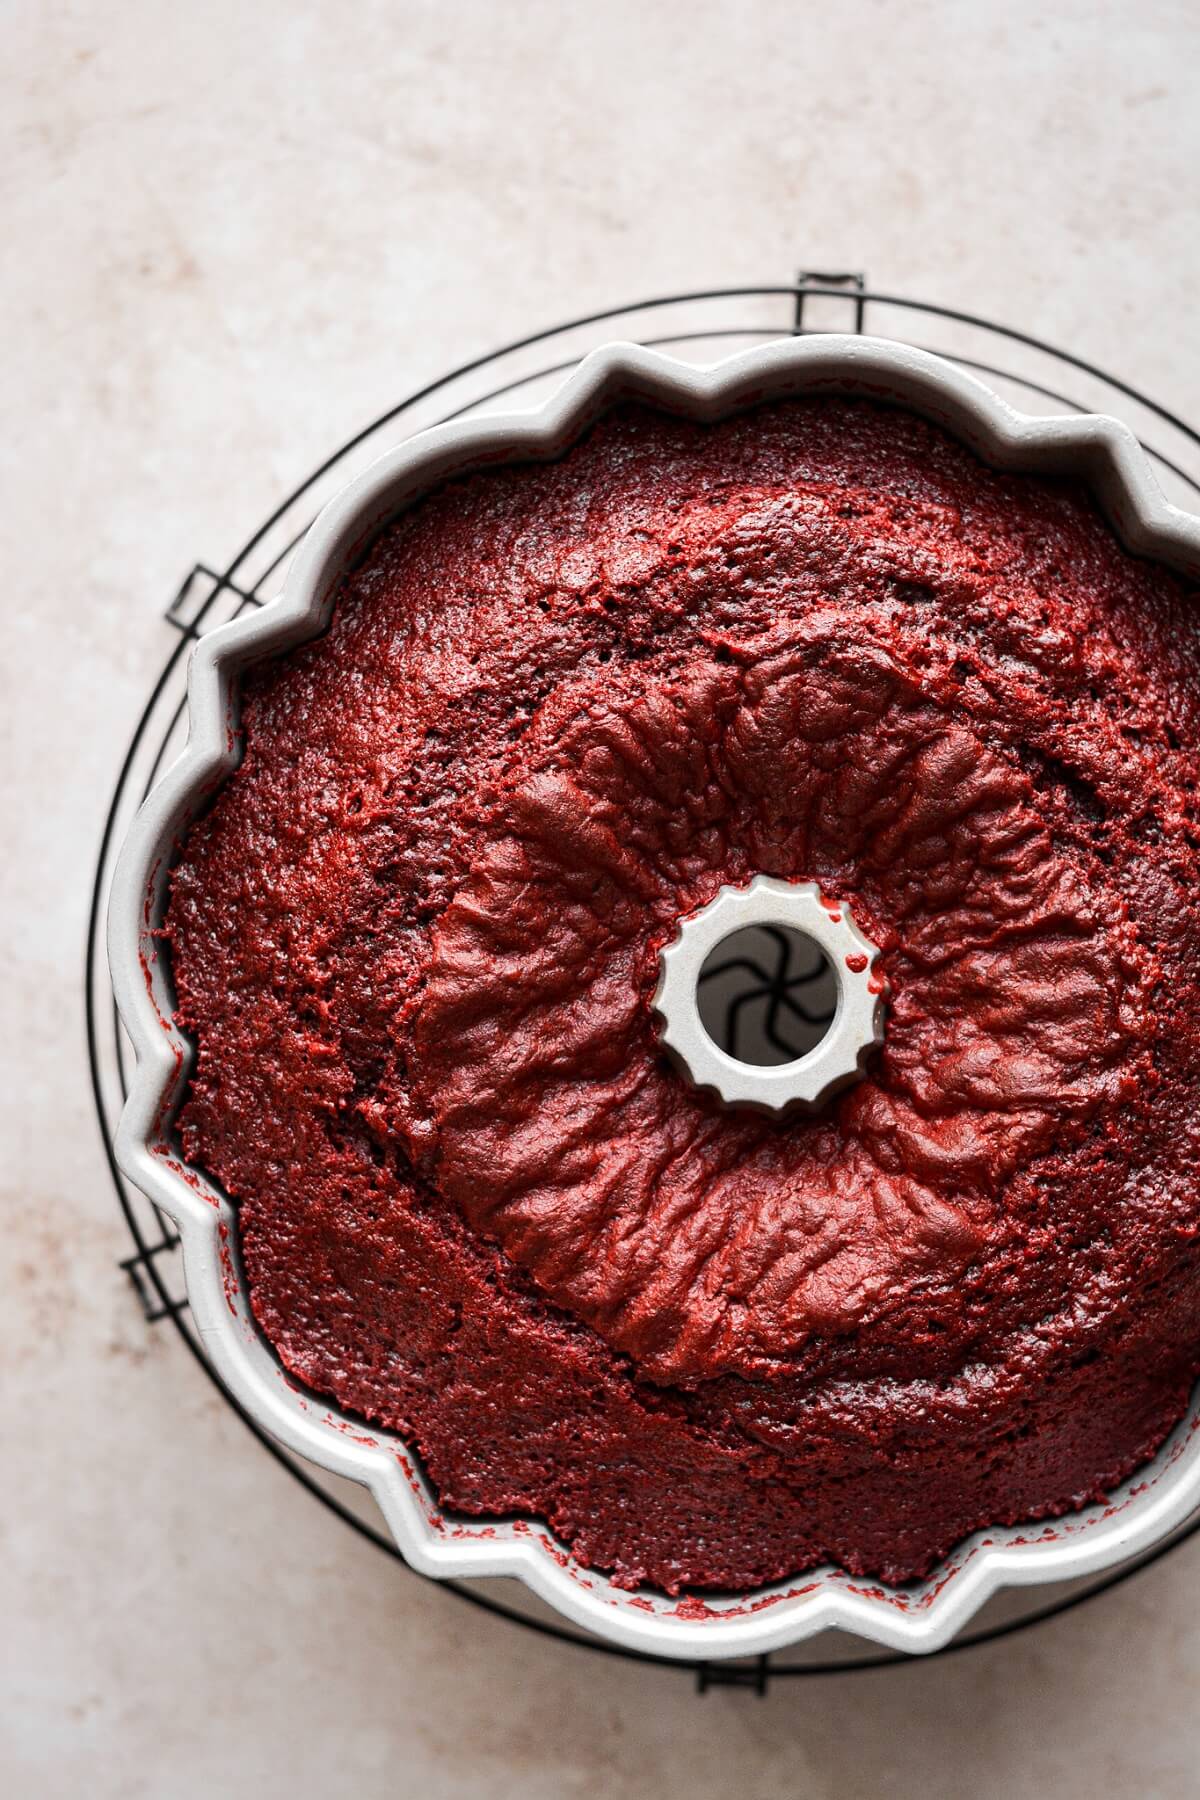 Step 6 for making red velvet bundt cake.